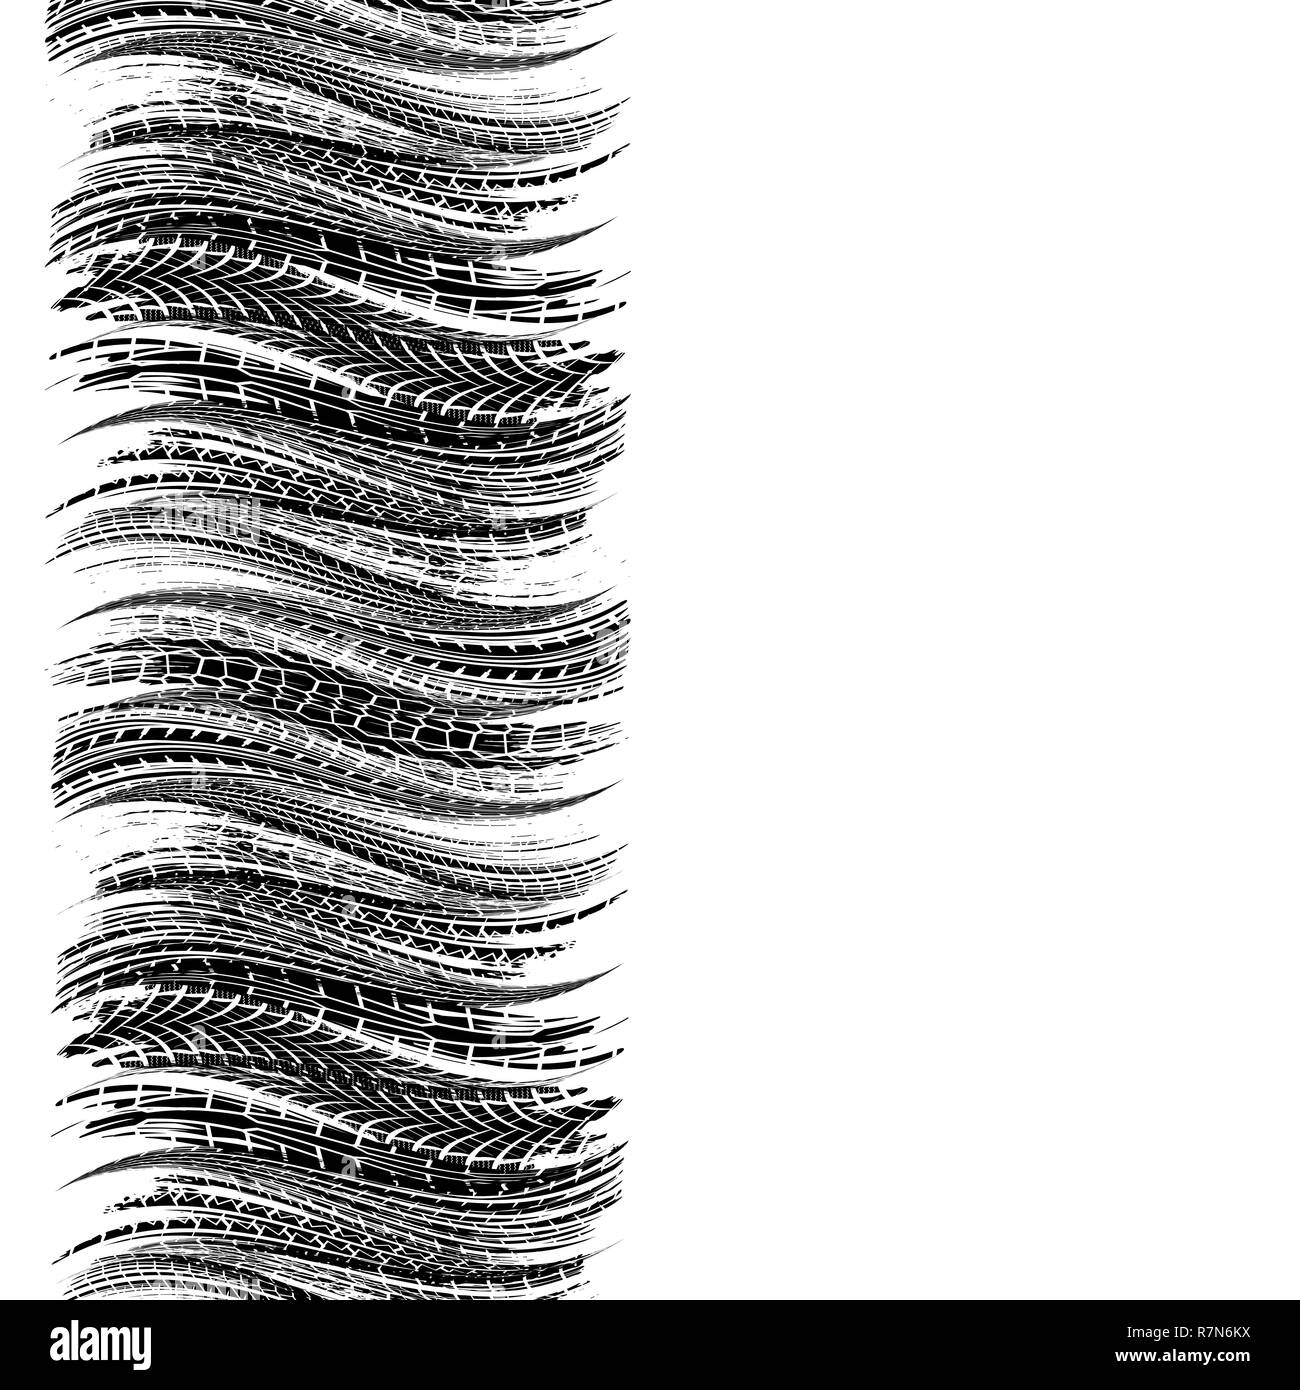 Les traces de pneus d'onde verticale noire isolé sur fond blanc Illustration de Vecteur